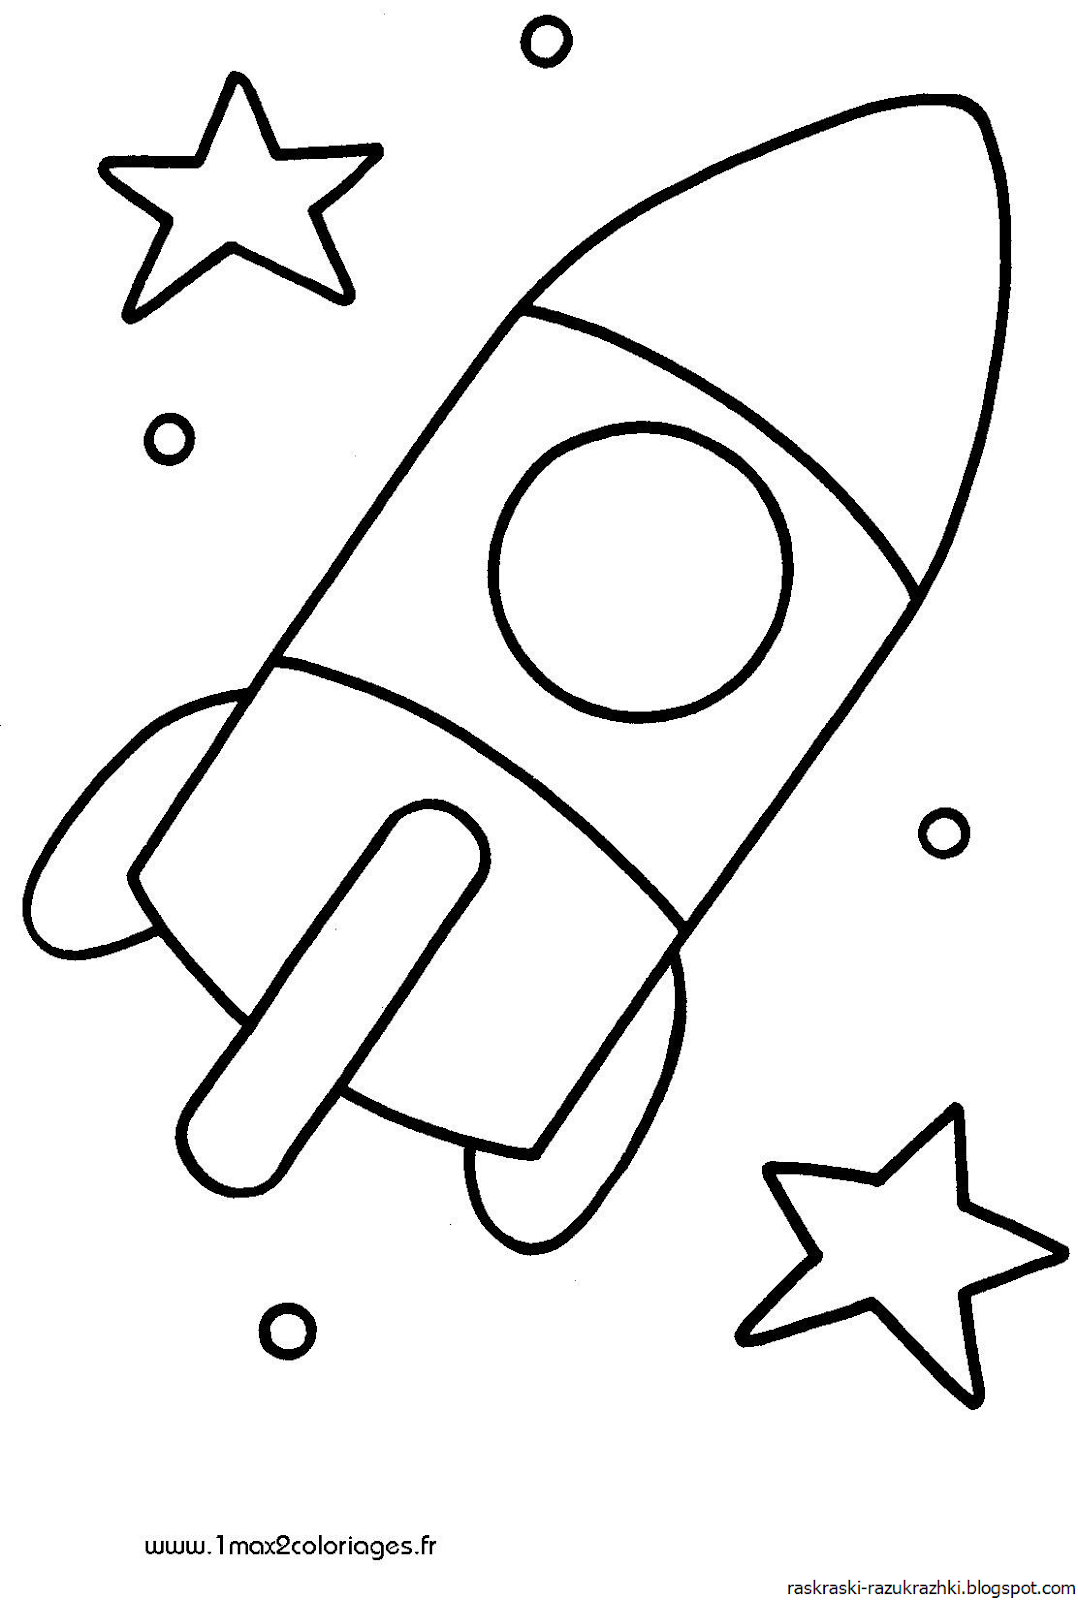 Раскраска ракета 2 3 года. Ракета раскраска. Ракета раскраска для малышей. Раскраски на тему космос для детей 3-4 лет. Раскраска для малышей. Космос.